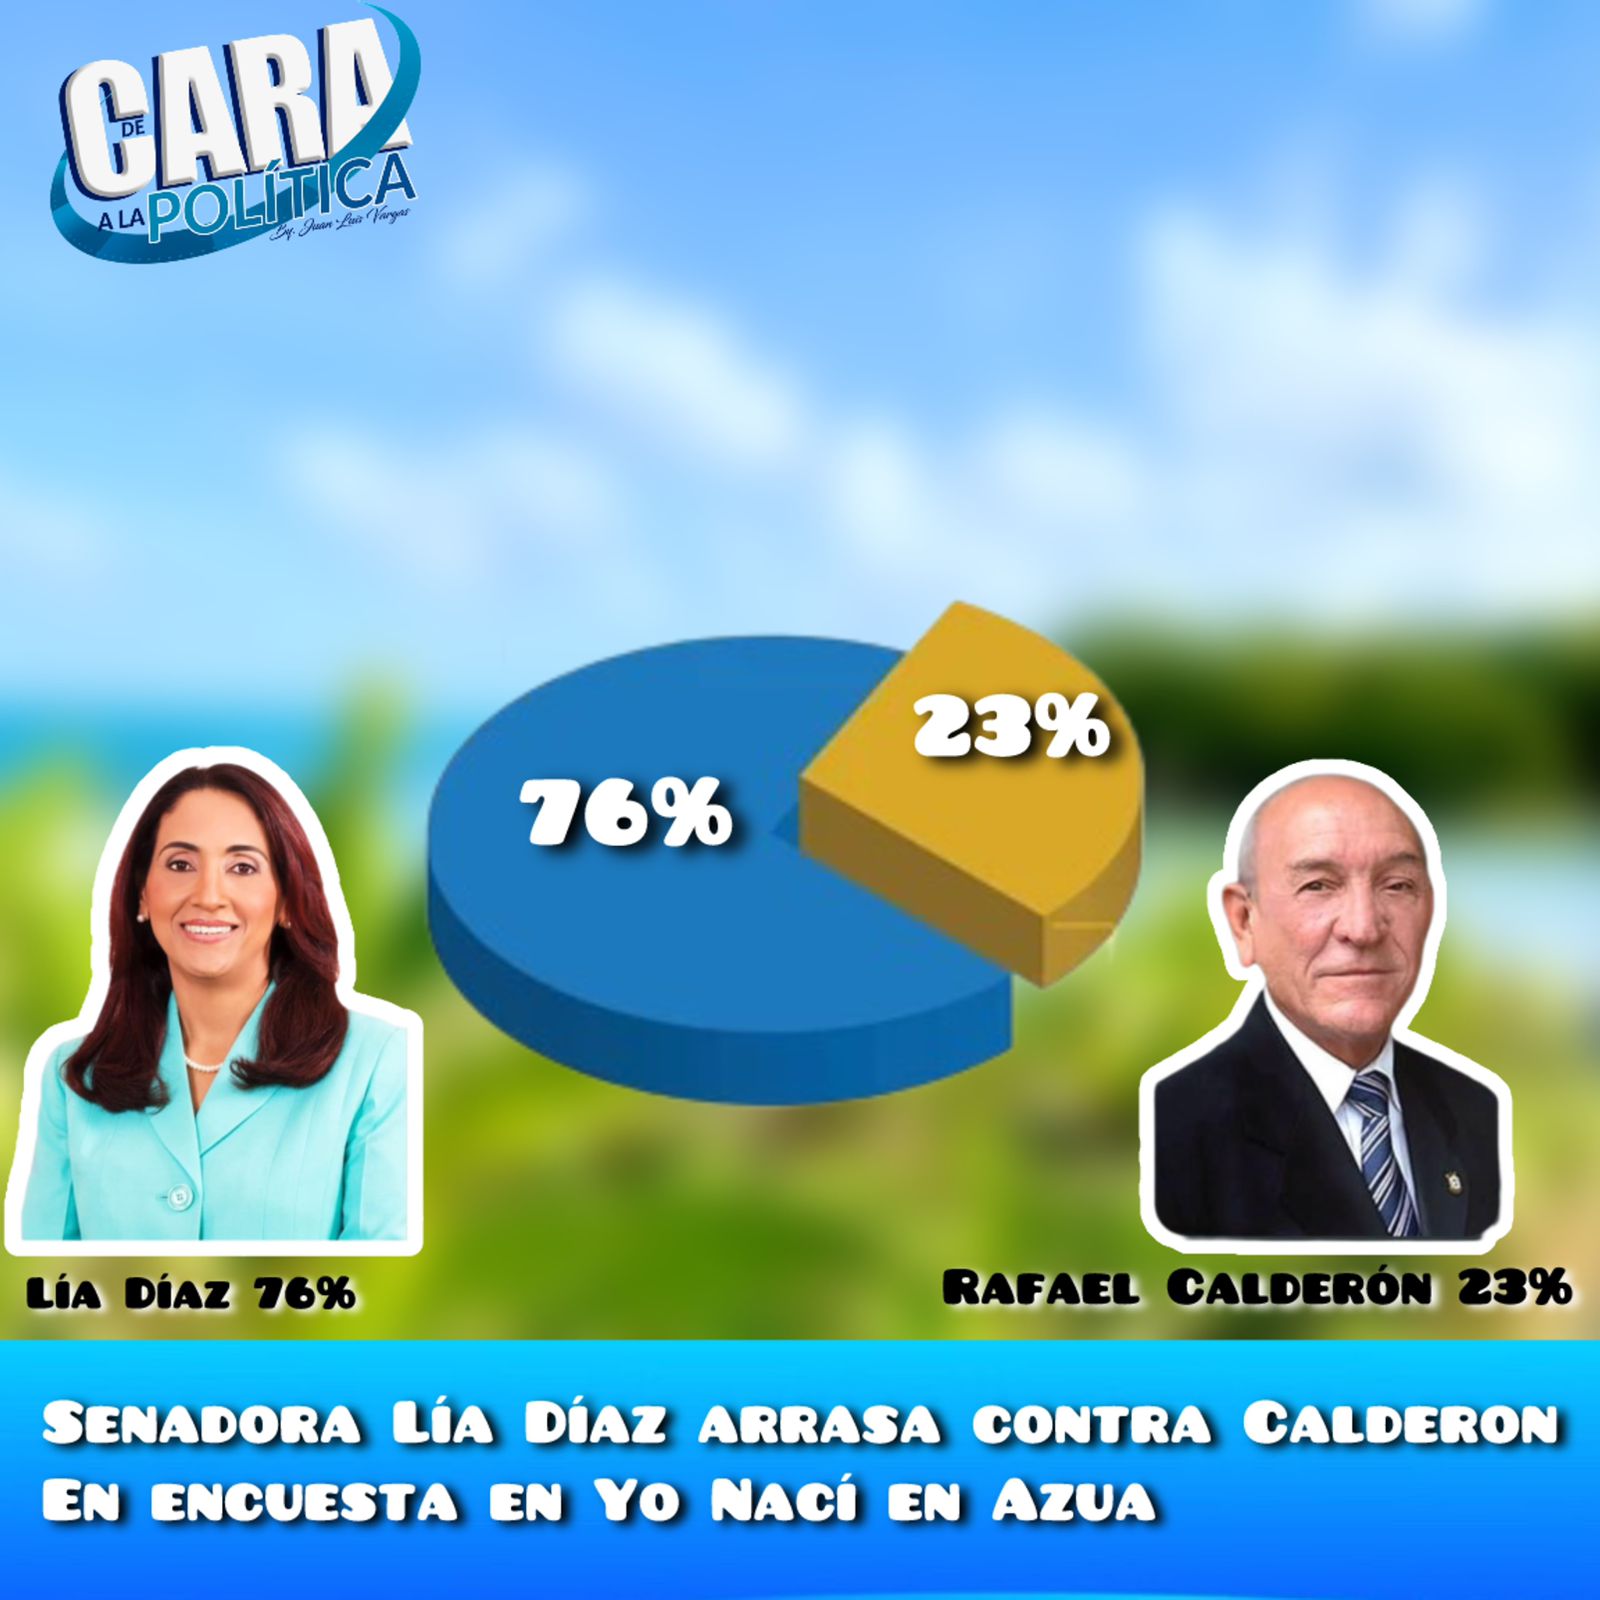 Senadora Lía Díaz 76% y Rafael Calderón 23% en encuesta realizada por Yo Nací en Azua.